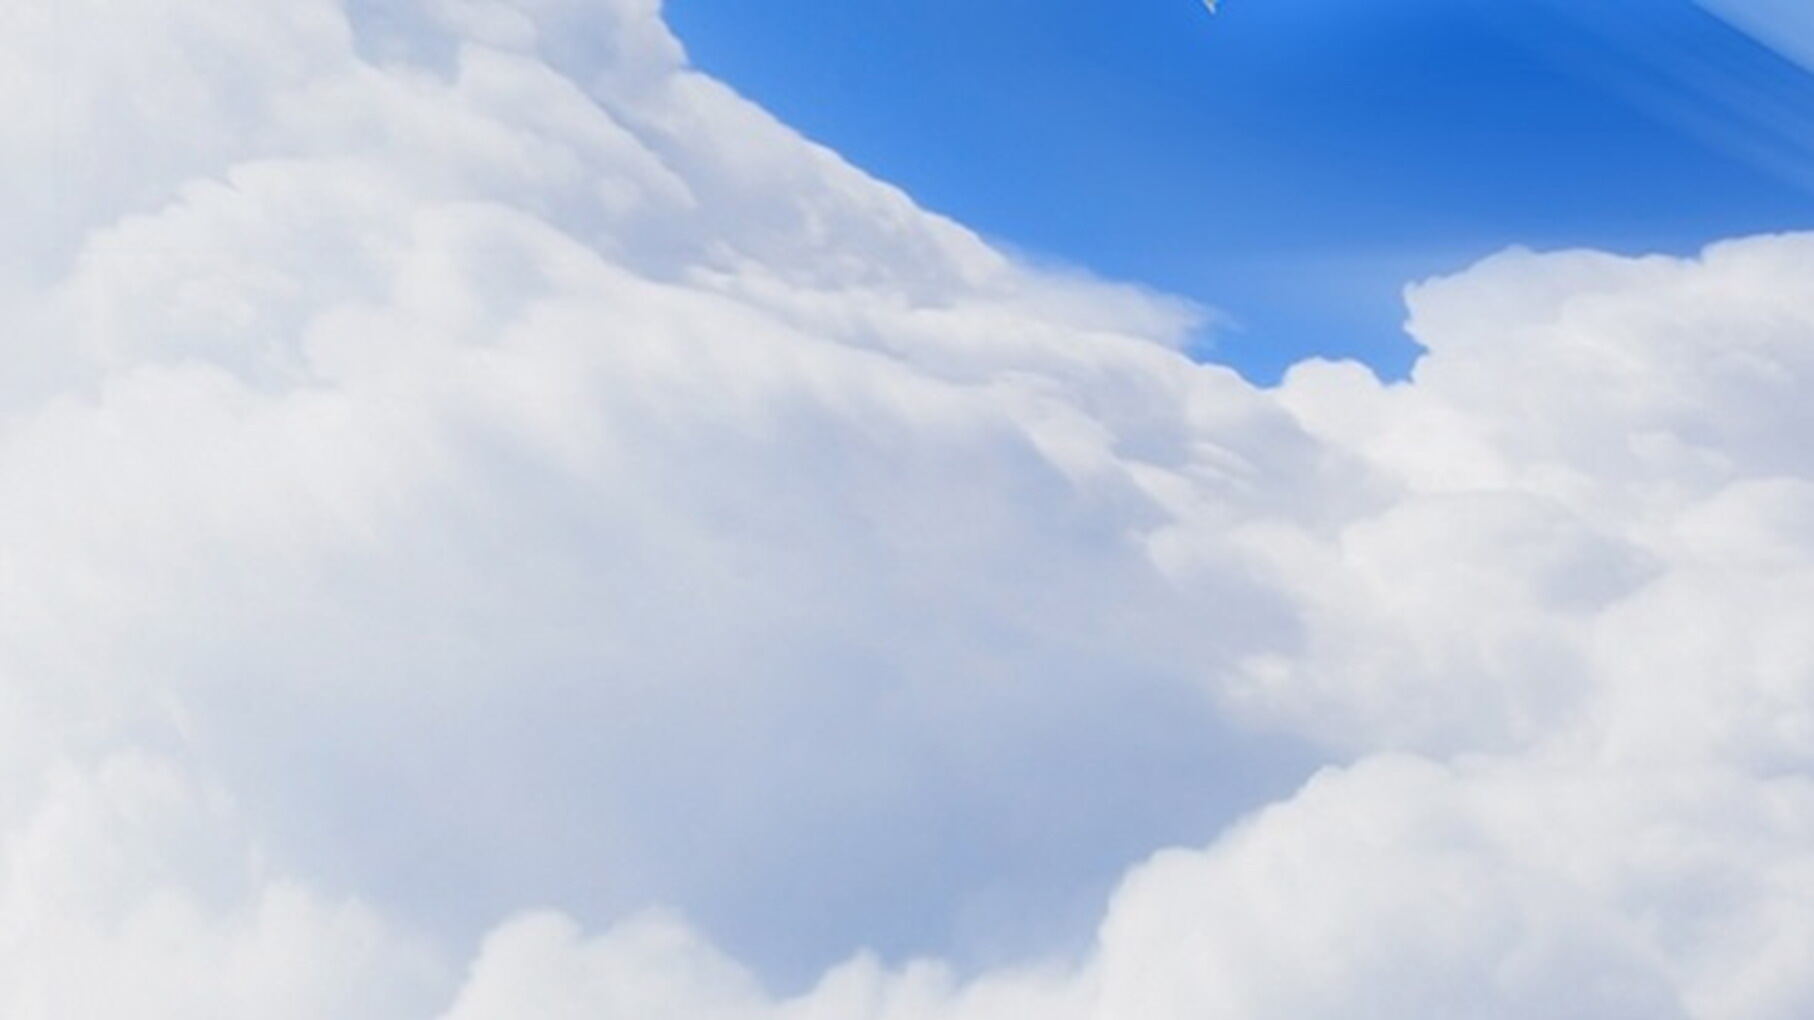 唯美蓝天白云飞机PPT背景图片